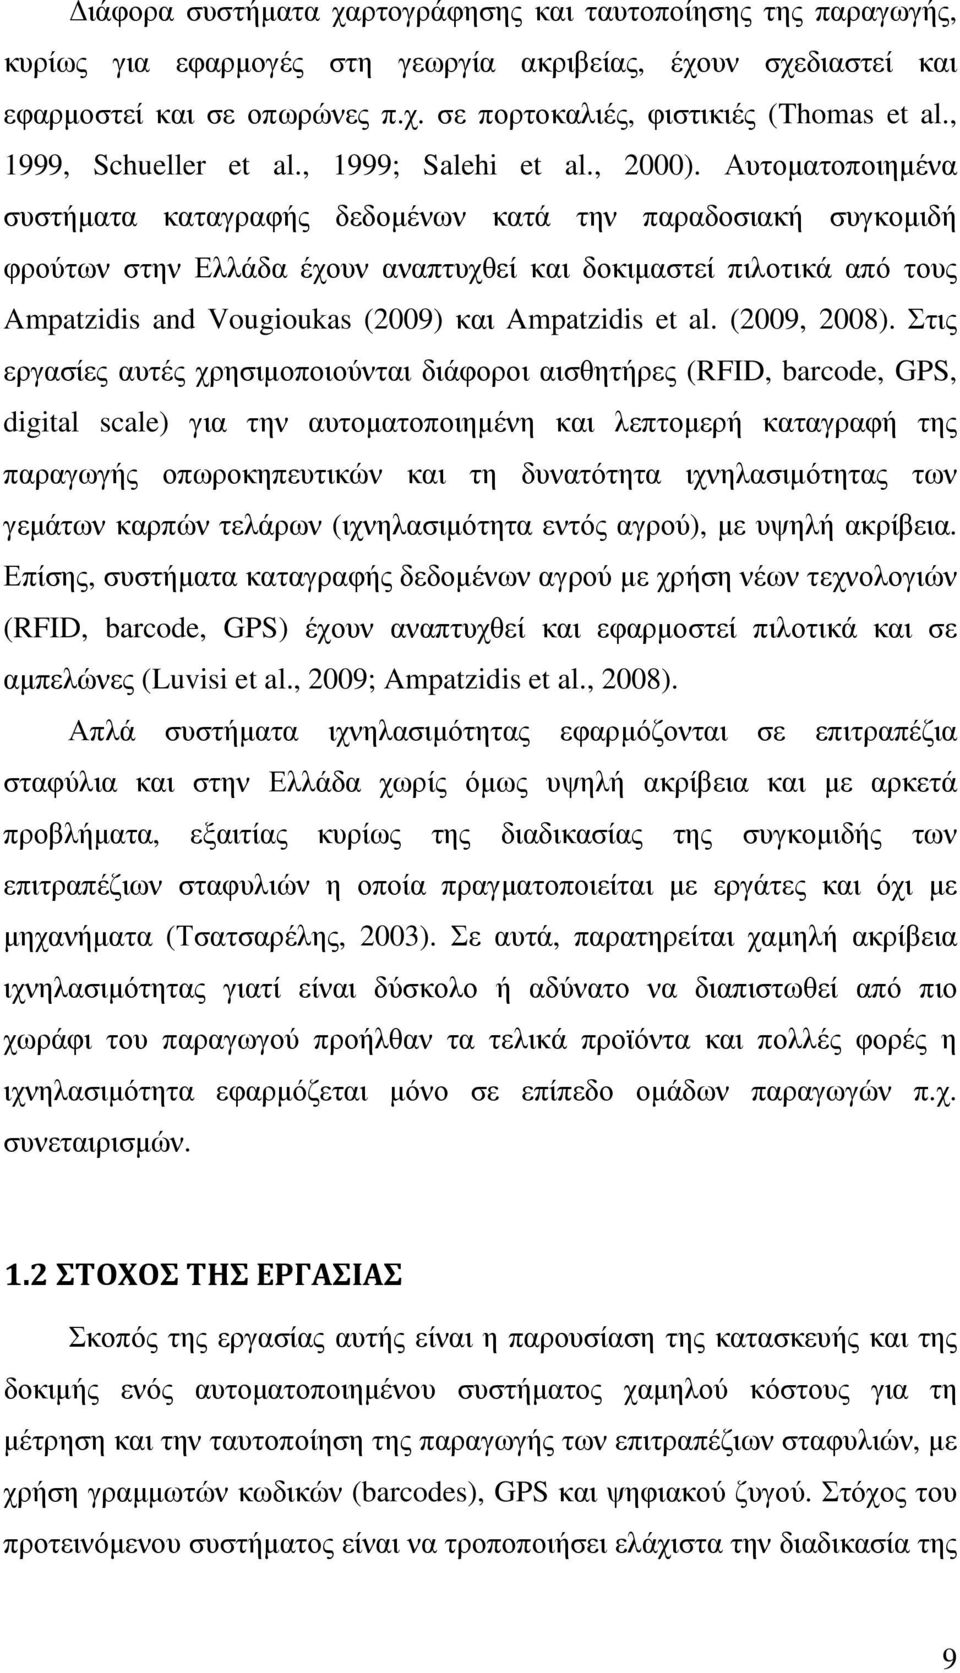 Αυτοµατοποιηµένα συστήµατα καταγραφής δεδοµένων κατά την παραδοσιακή συγκοµιδή φρούτων στην Ελλάδα έχουν αναπτυχθεί και δοκιµαστεί πιλοτικά από τους Ampatzidis and Vougioukas (2009) και Ampatzidis et